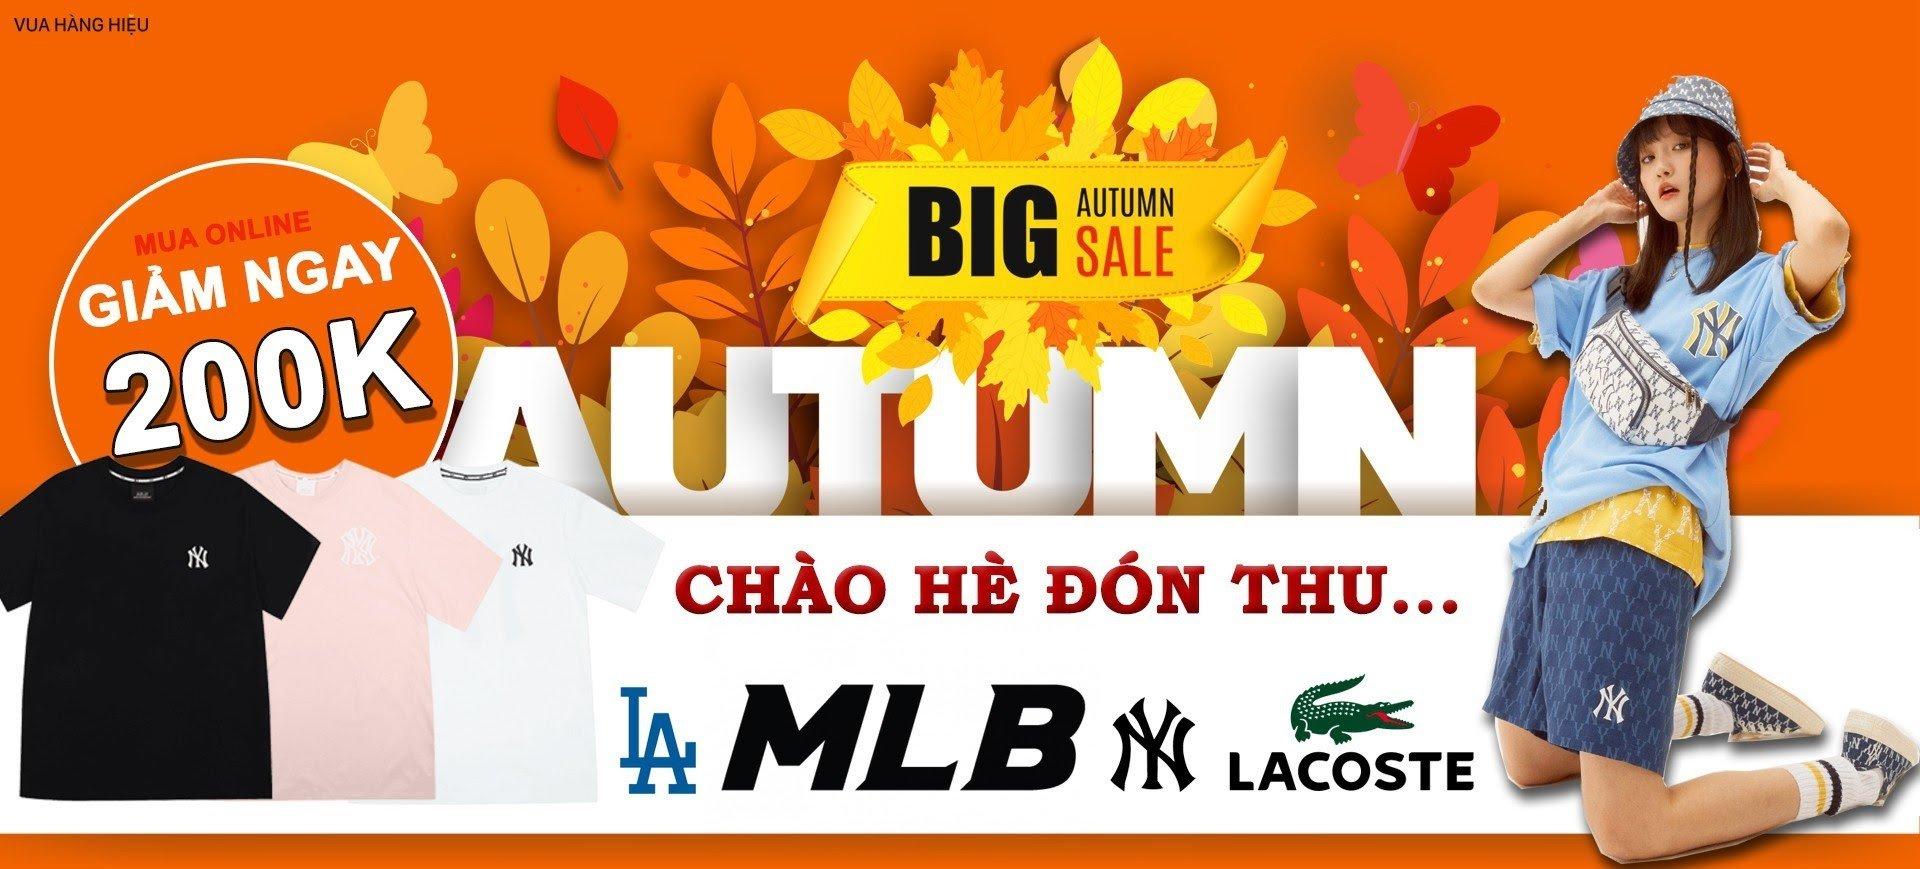 Vua Hàng Hiệu Big Sale Autumn: Giảm giá thời trang MLB tới ...